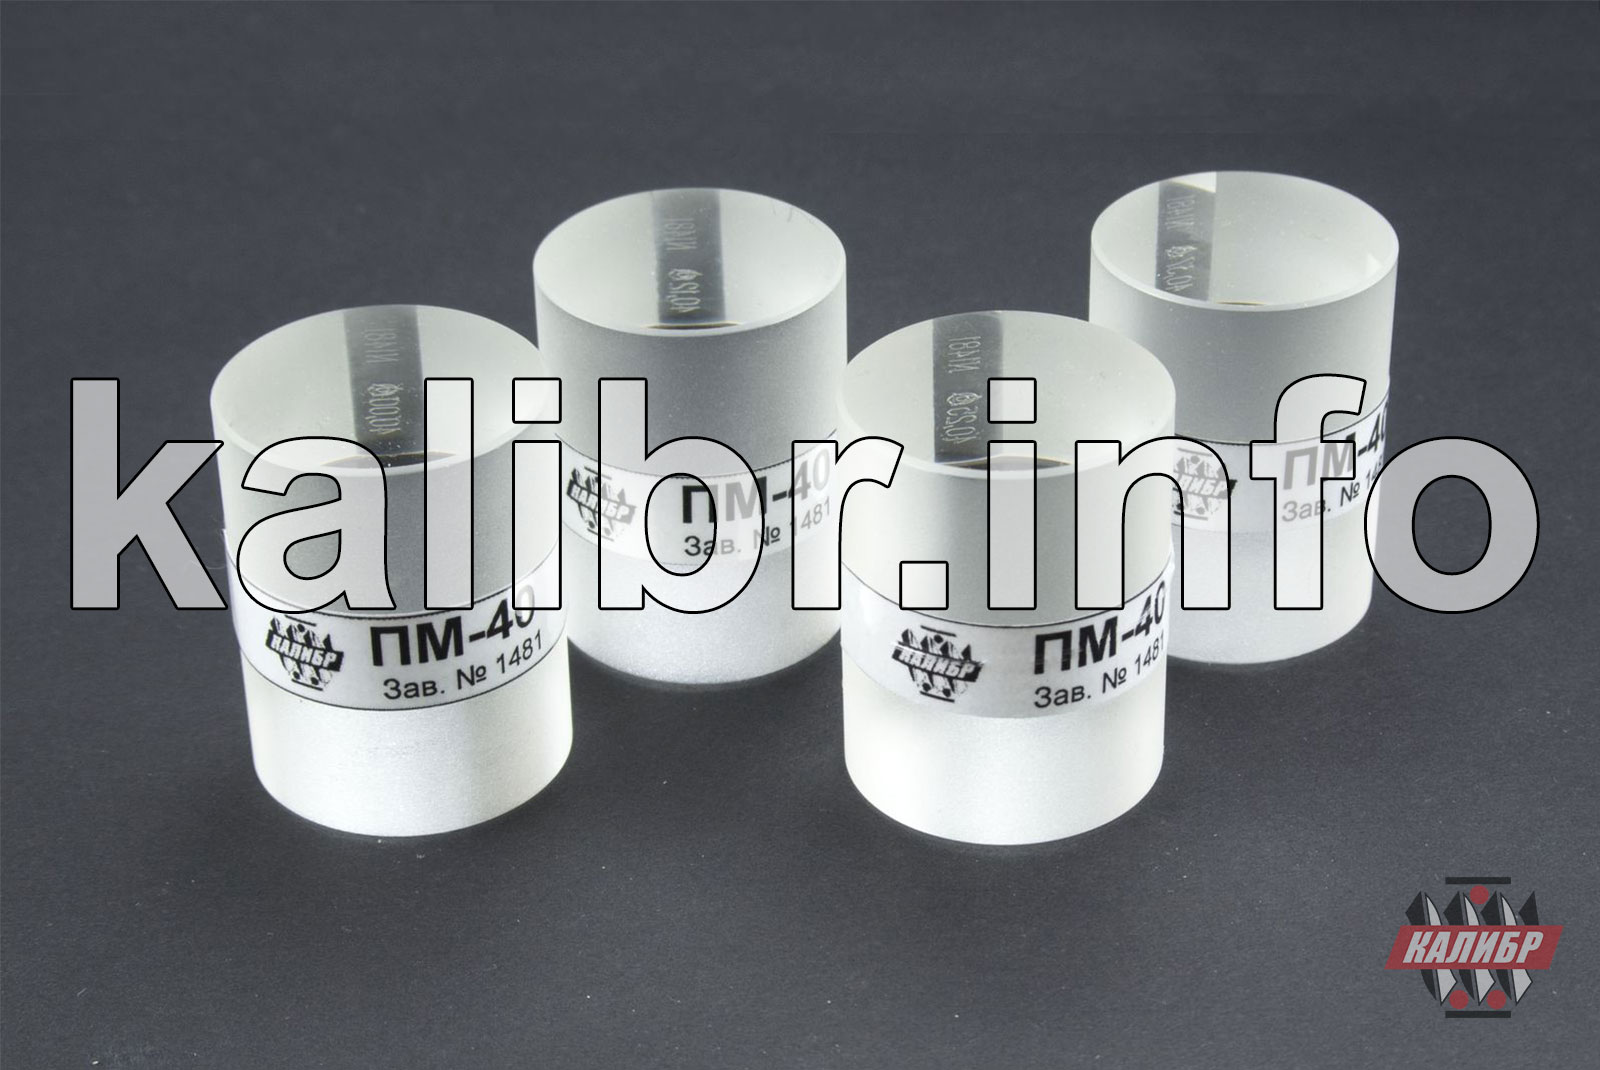 Пластины плоскопараллельные стеклянные типа ПМ-15, ПМ-40, ПМ-65, ПМ-90